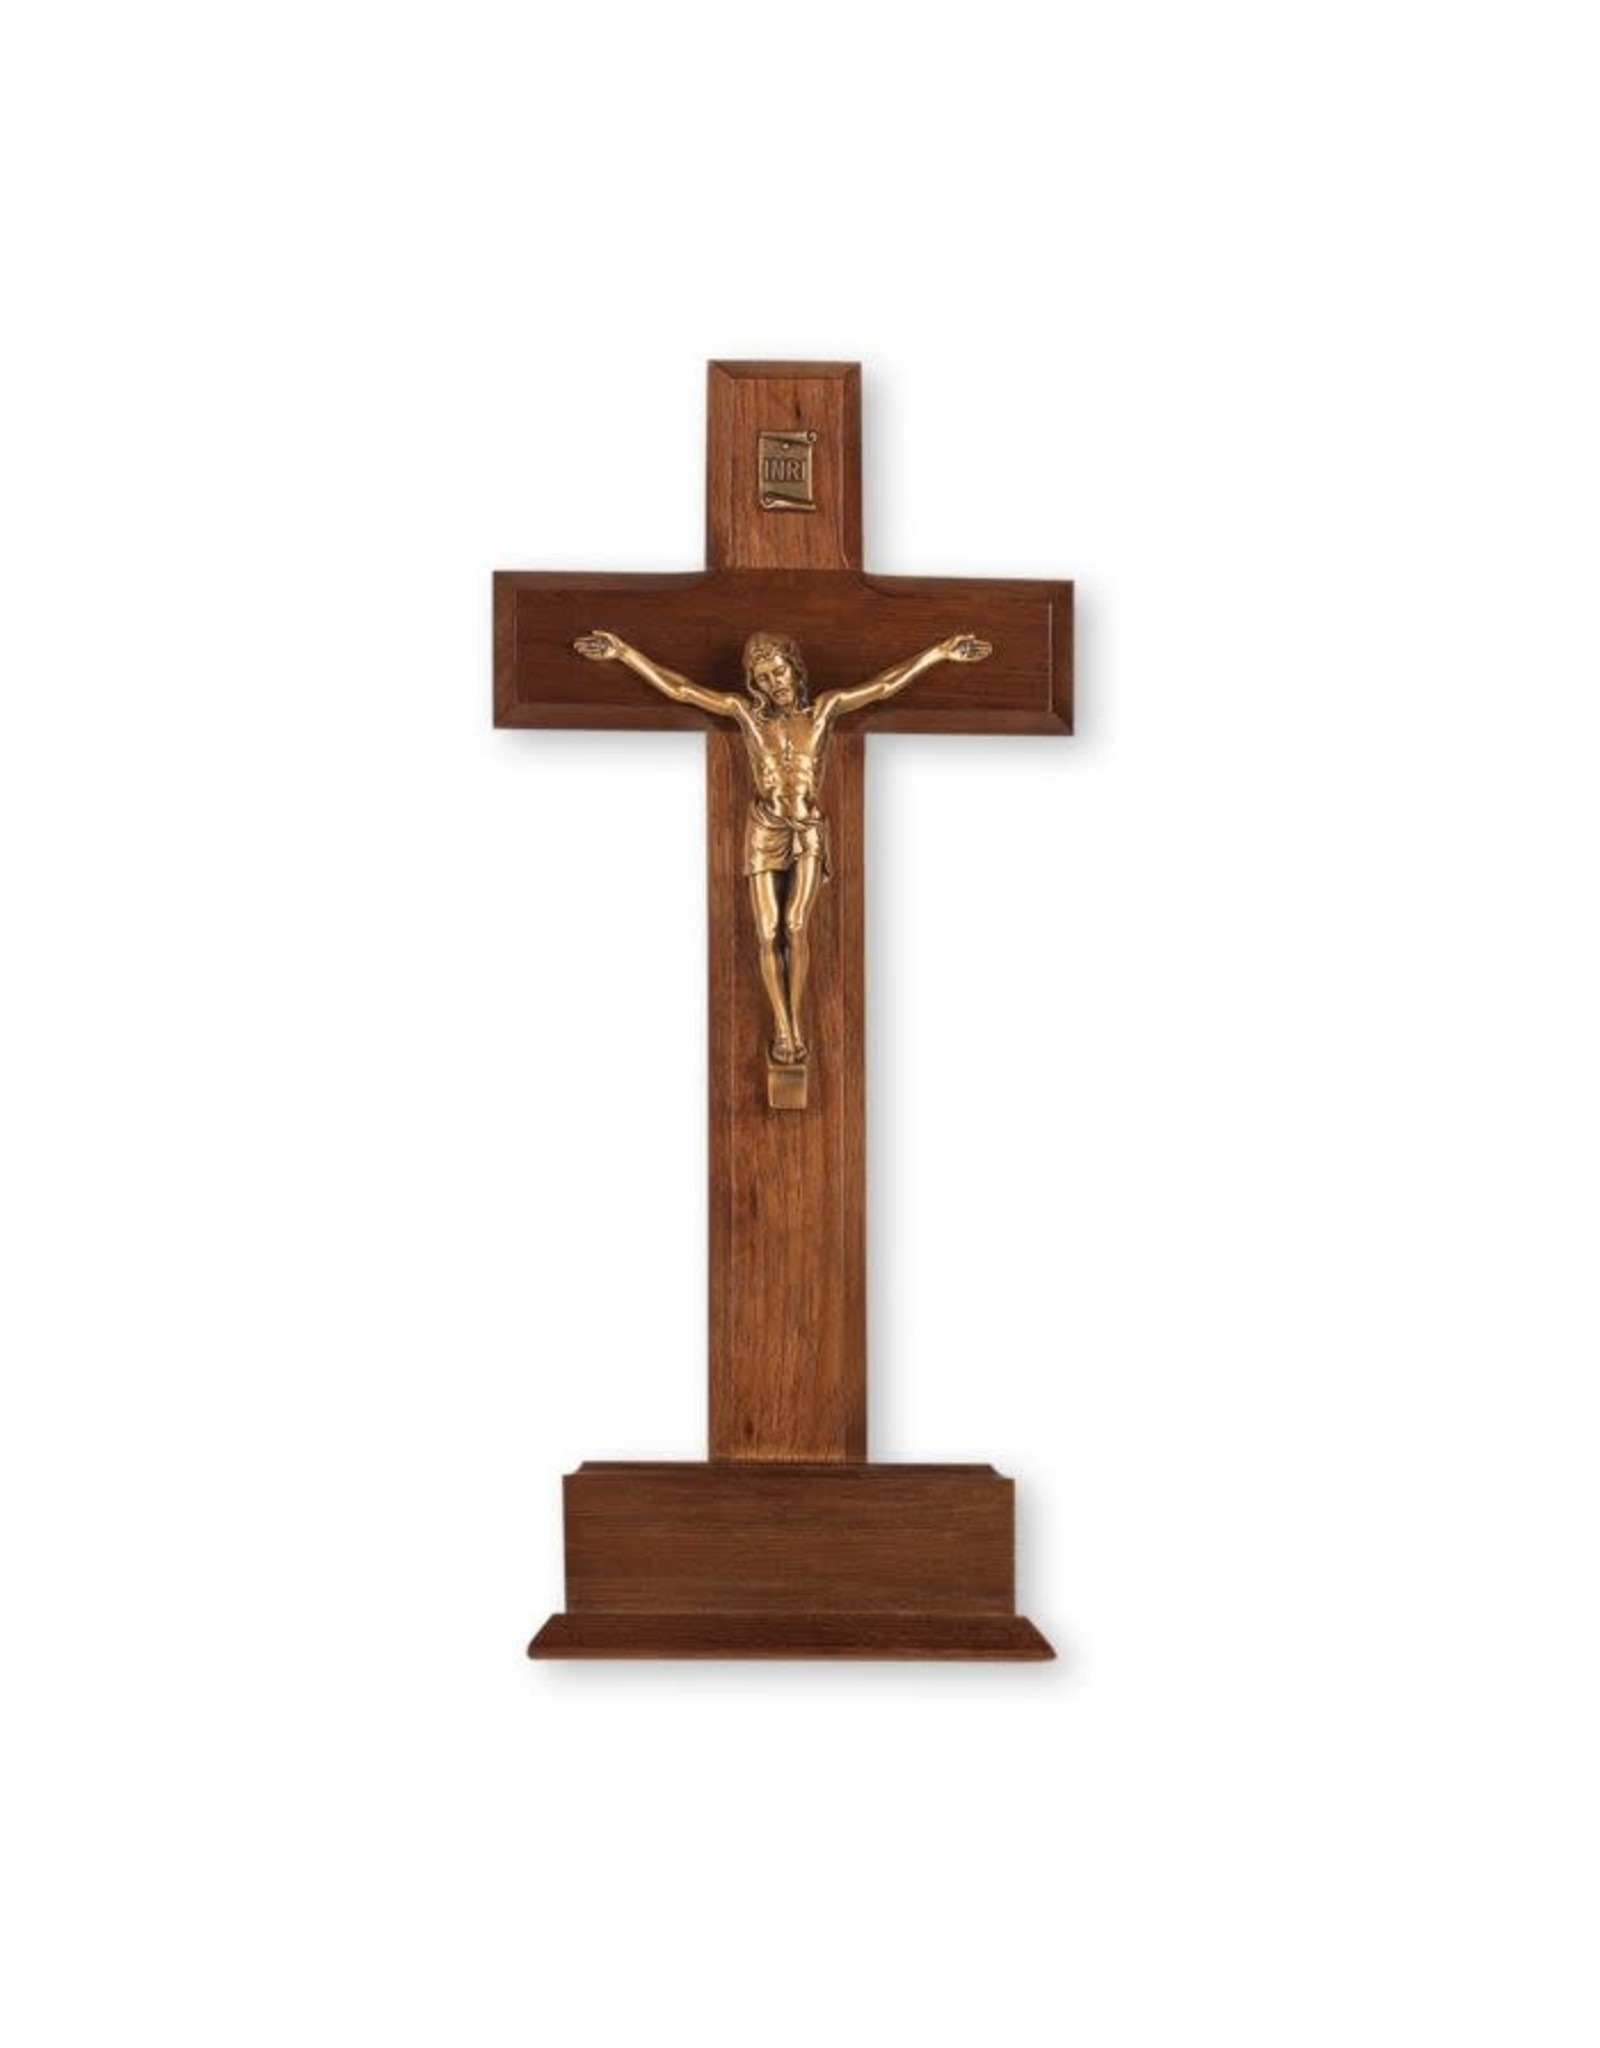 Hirten Crucifix, Standing, 10" Walnut Cross with Gold Plated Corpus